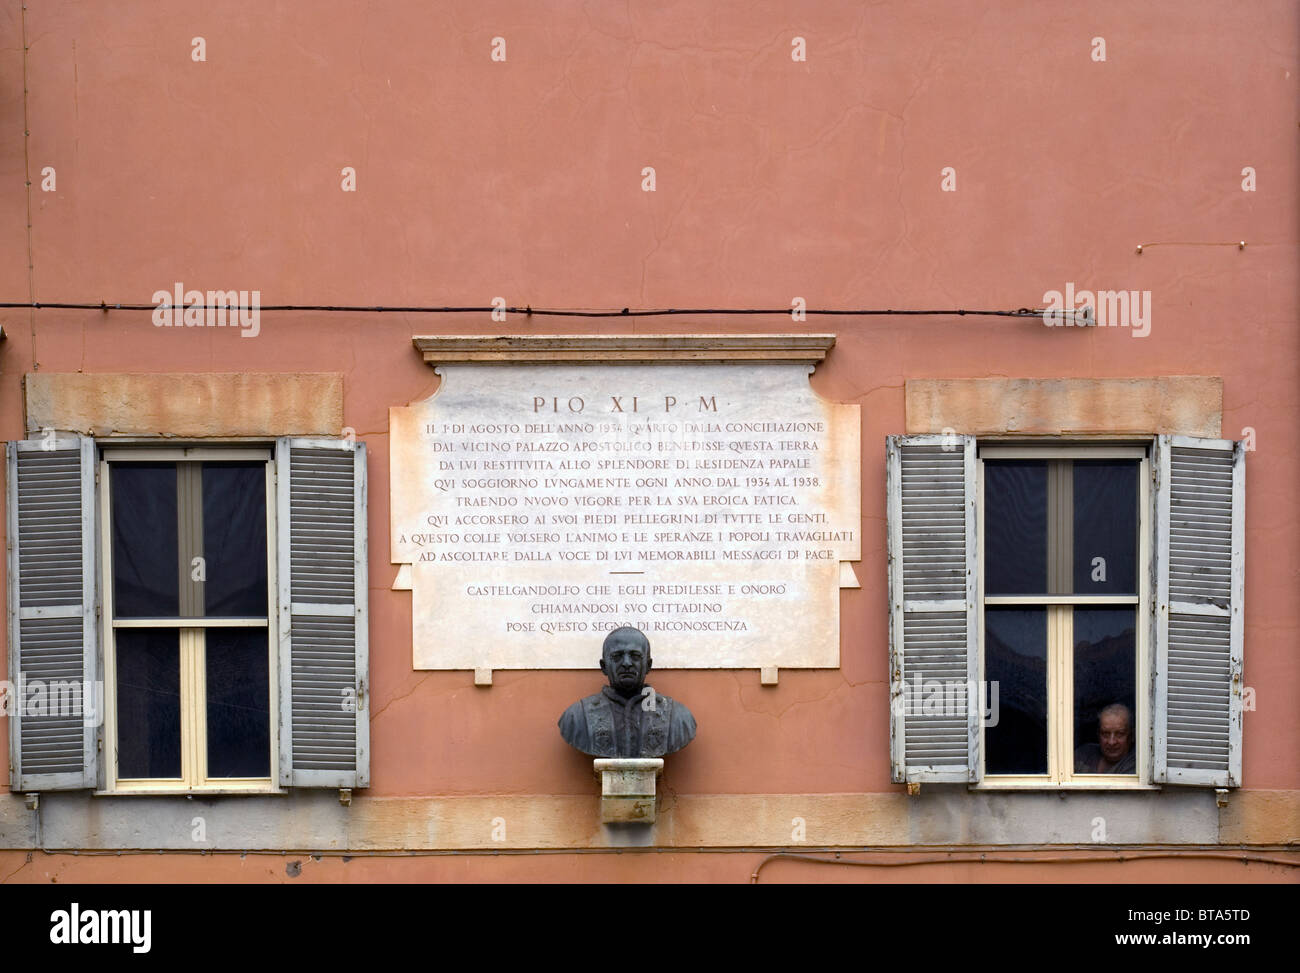 La façade de l'immeuble à Castelgandolfo, avec man looking through window Banque D'Images